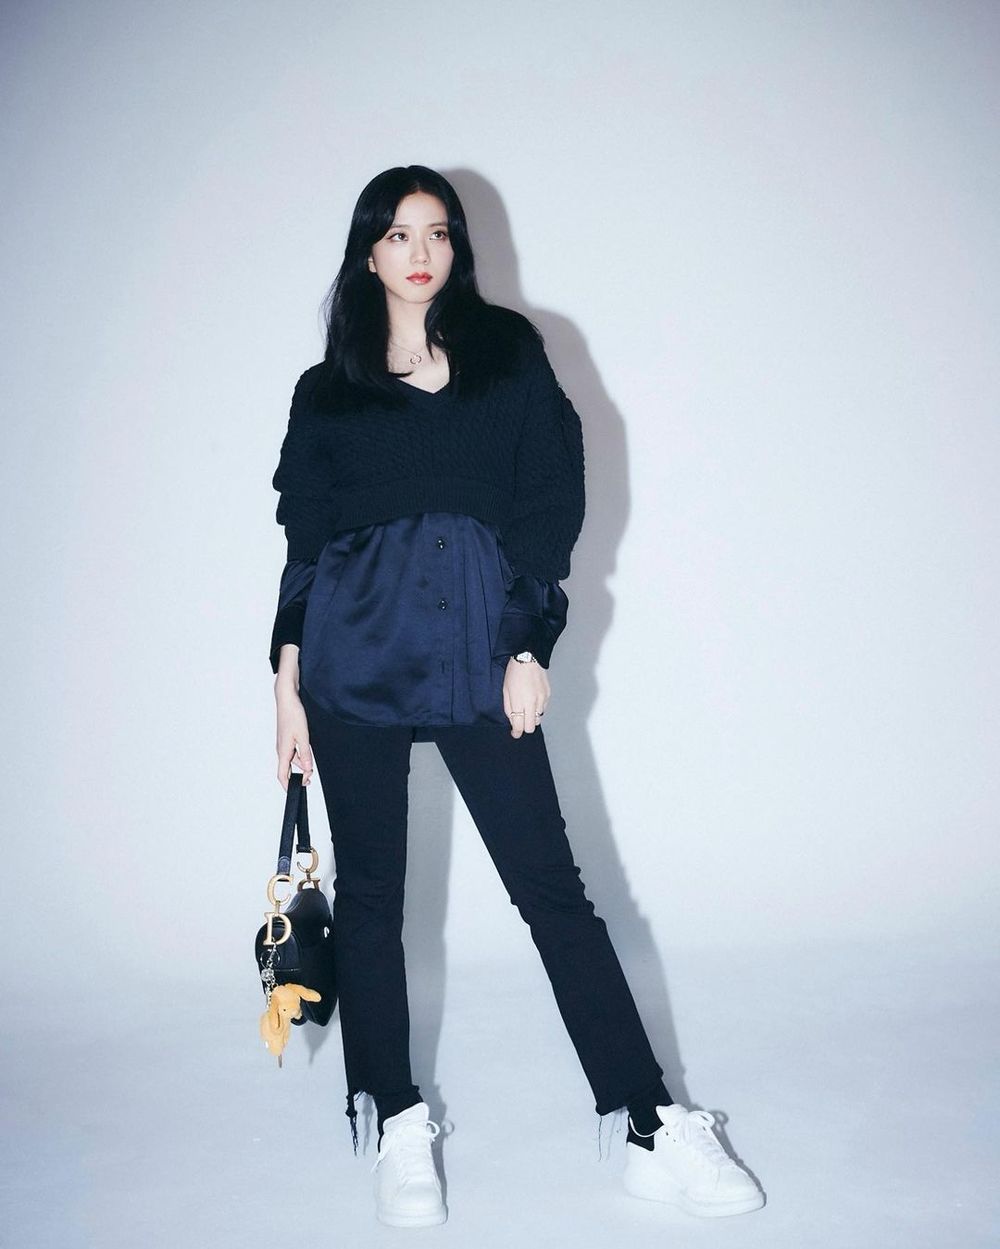  
Bức ảnh khiến cư dân mạng phải suy nghĩ mãi về style ăn mặc và tạo dáng của Jisoo. (Ảnh: Instagram)